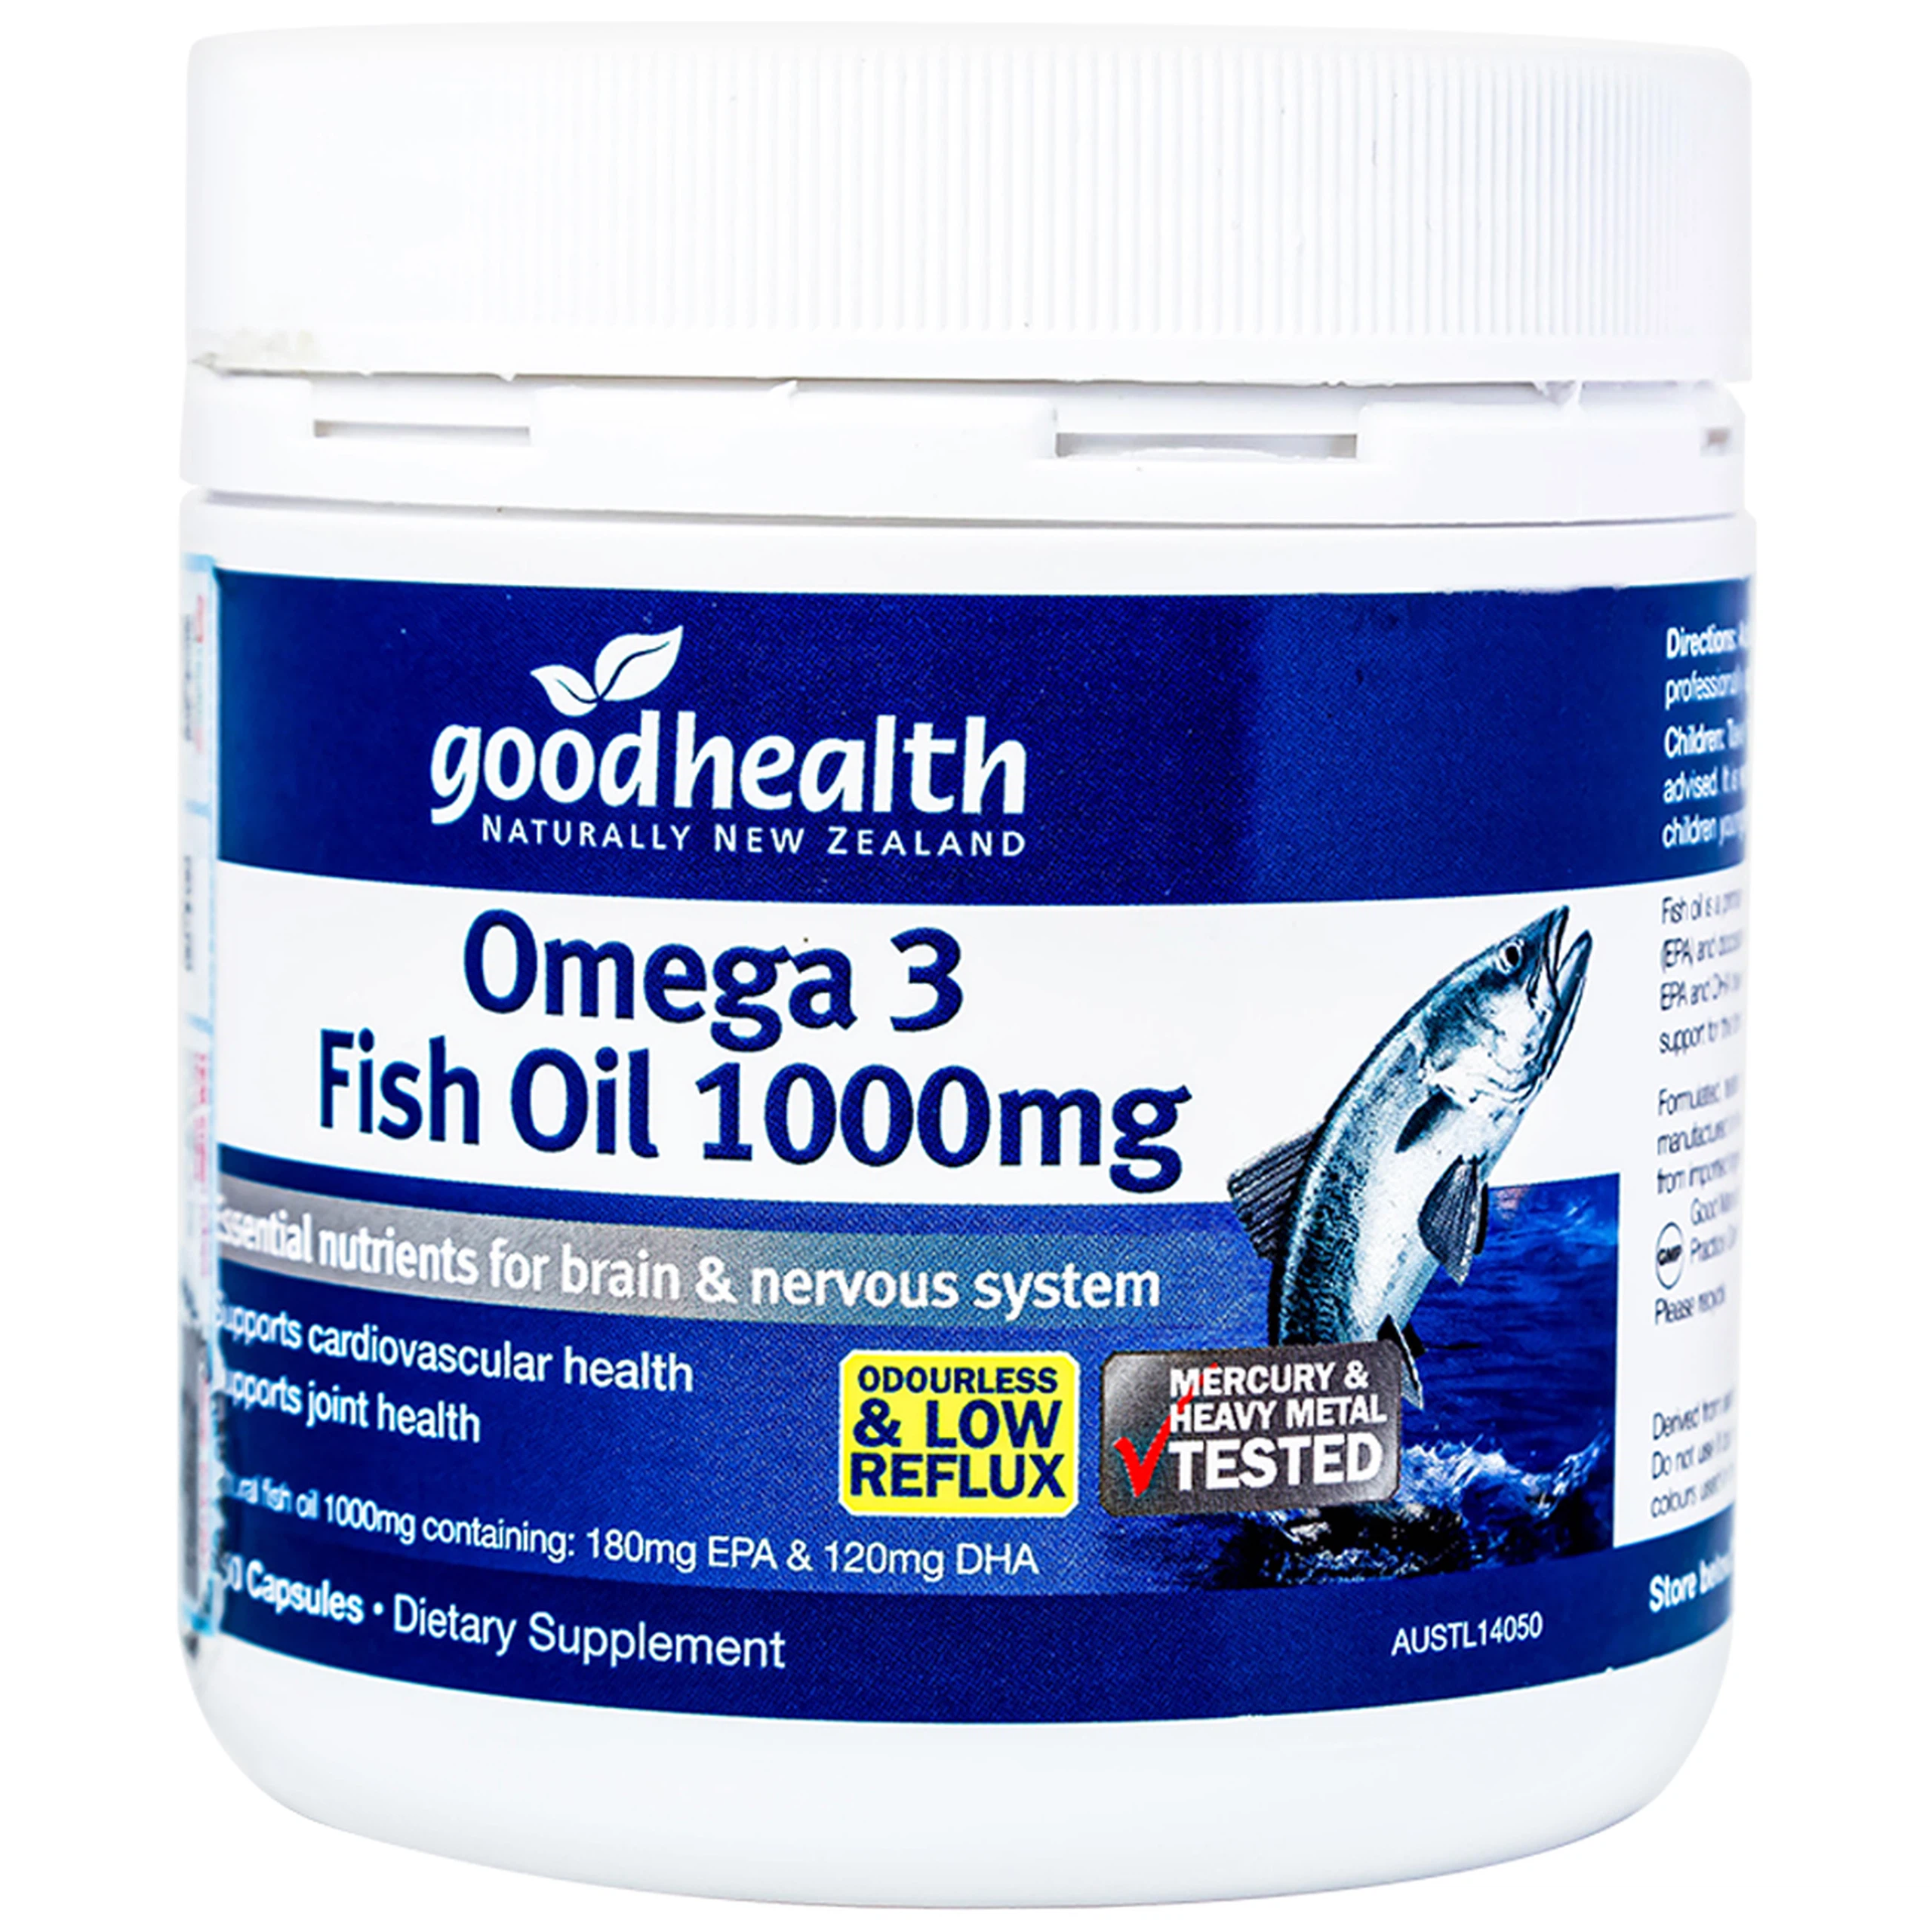 Viên uống Omega 3 Fish Oil 1000mg Good Health giúp phát triển não bộ, tốt cho mắt và tim mạch (150 viên)